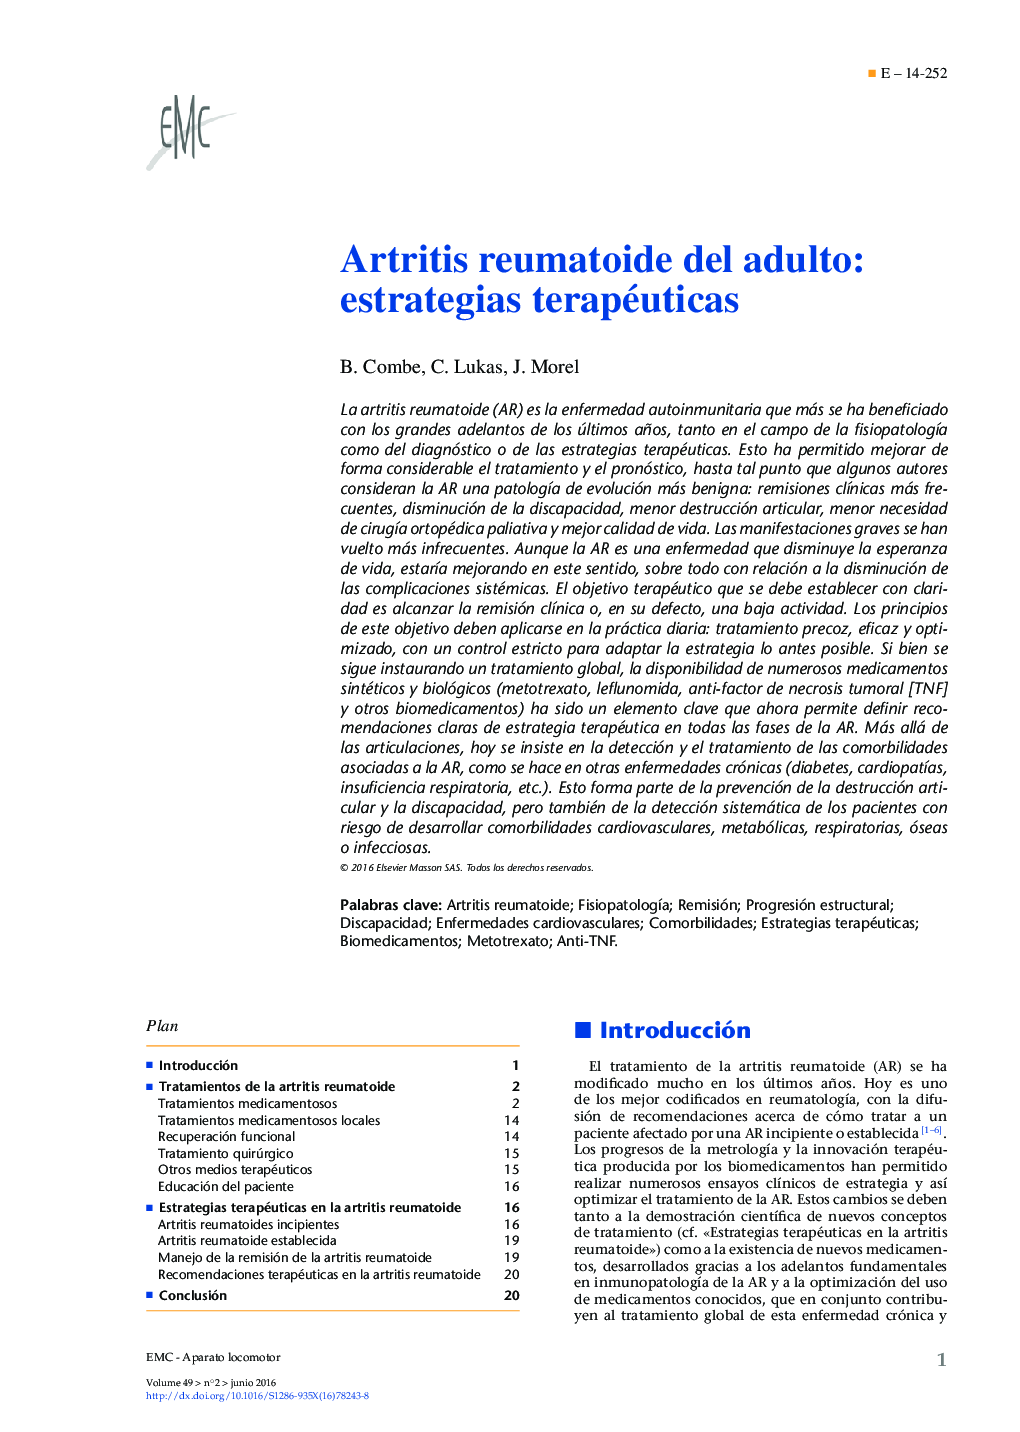 Artritis reumatoide del adulto: estrategias terapéuticas